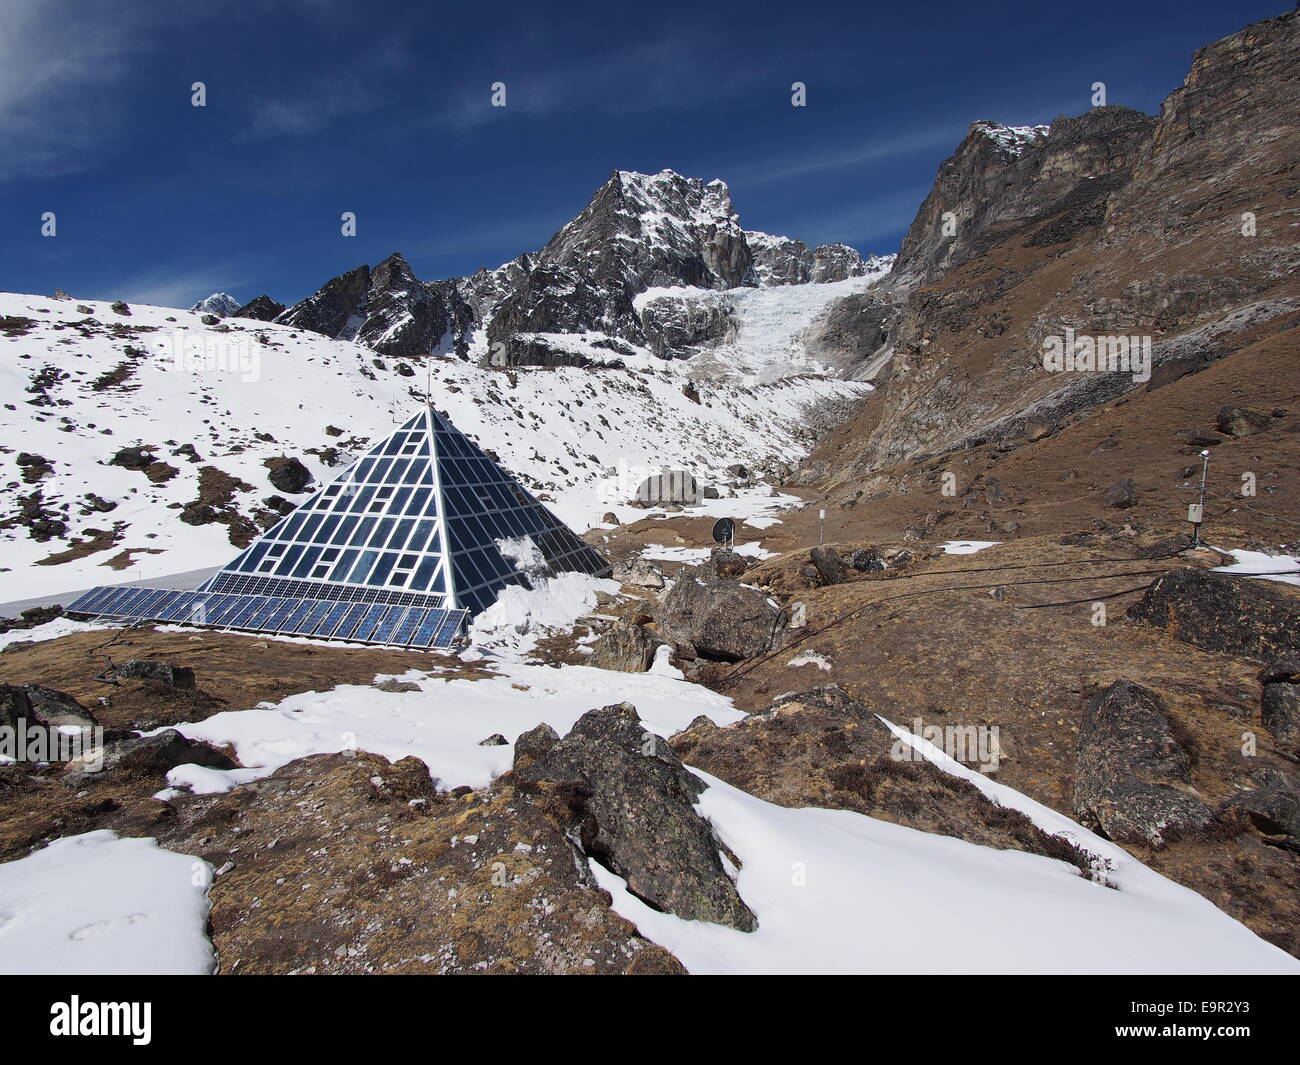 Ev-K2-CNR italiano aka Pirámide, una investigación científica de gran altitud centro ubicado cerca del Monte Everest, en la región de Khumbu en Nepal. Foto de stock